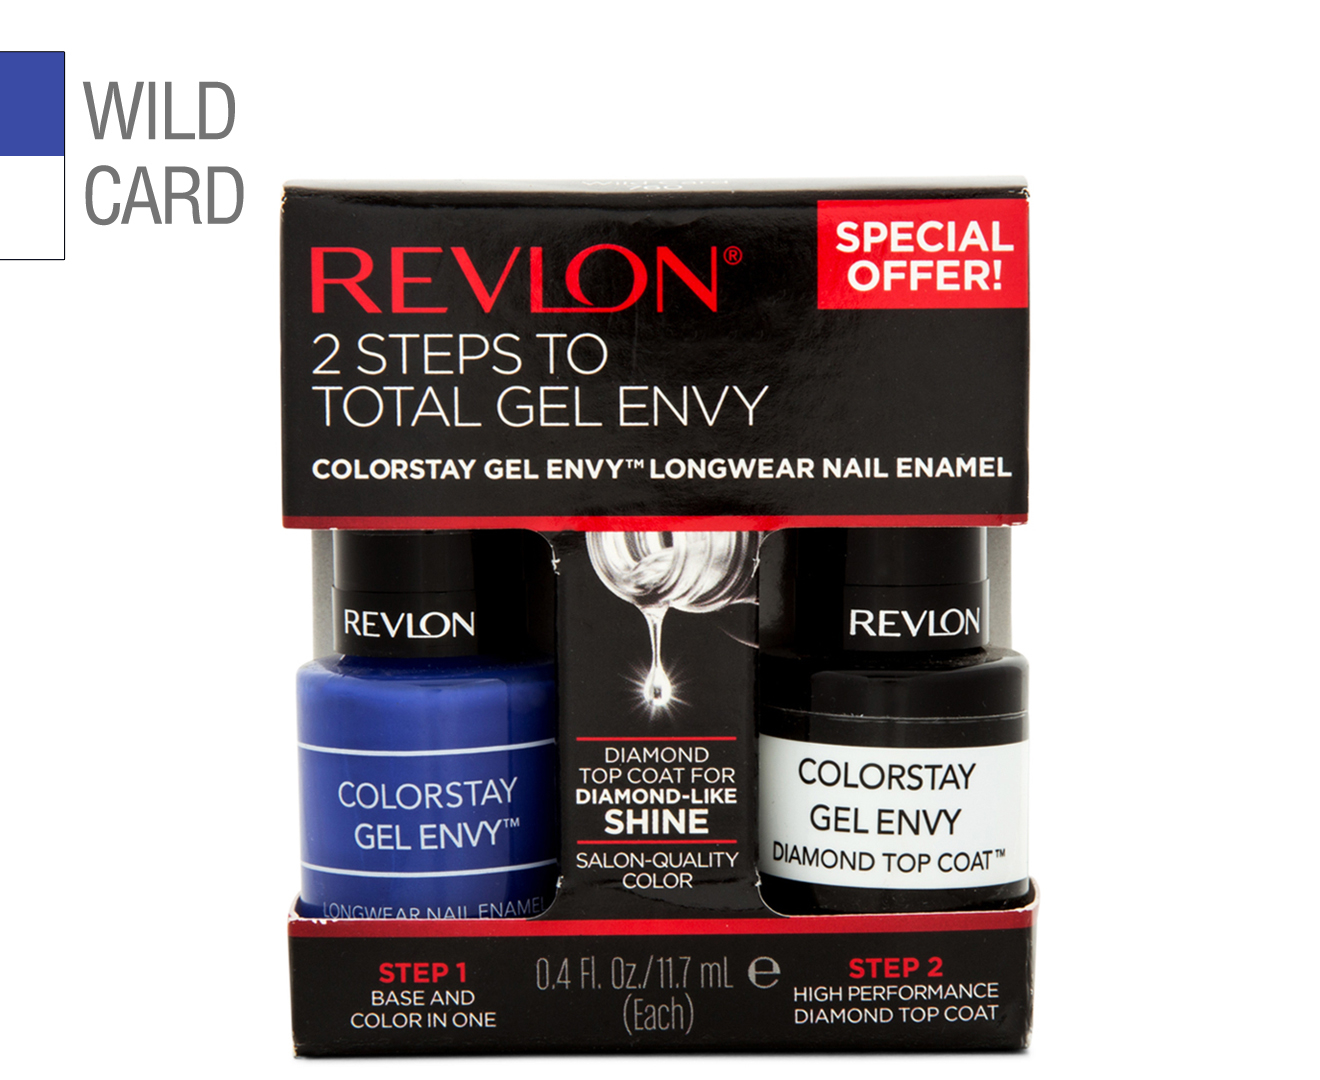 4. Revlon ColorStay Gel Envy in "Wild Card" - wide 2